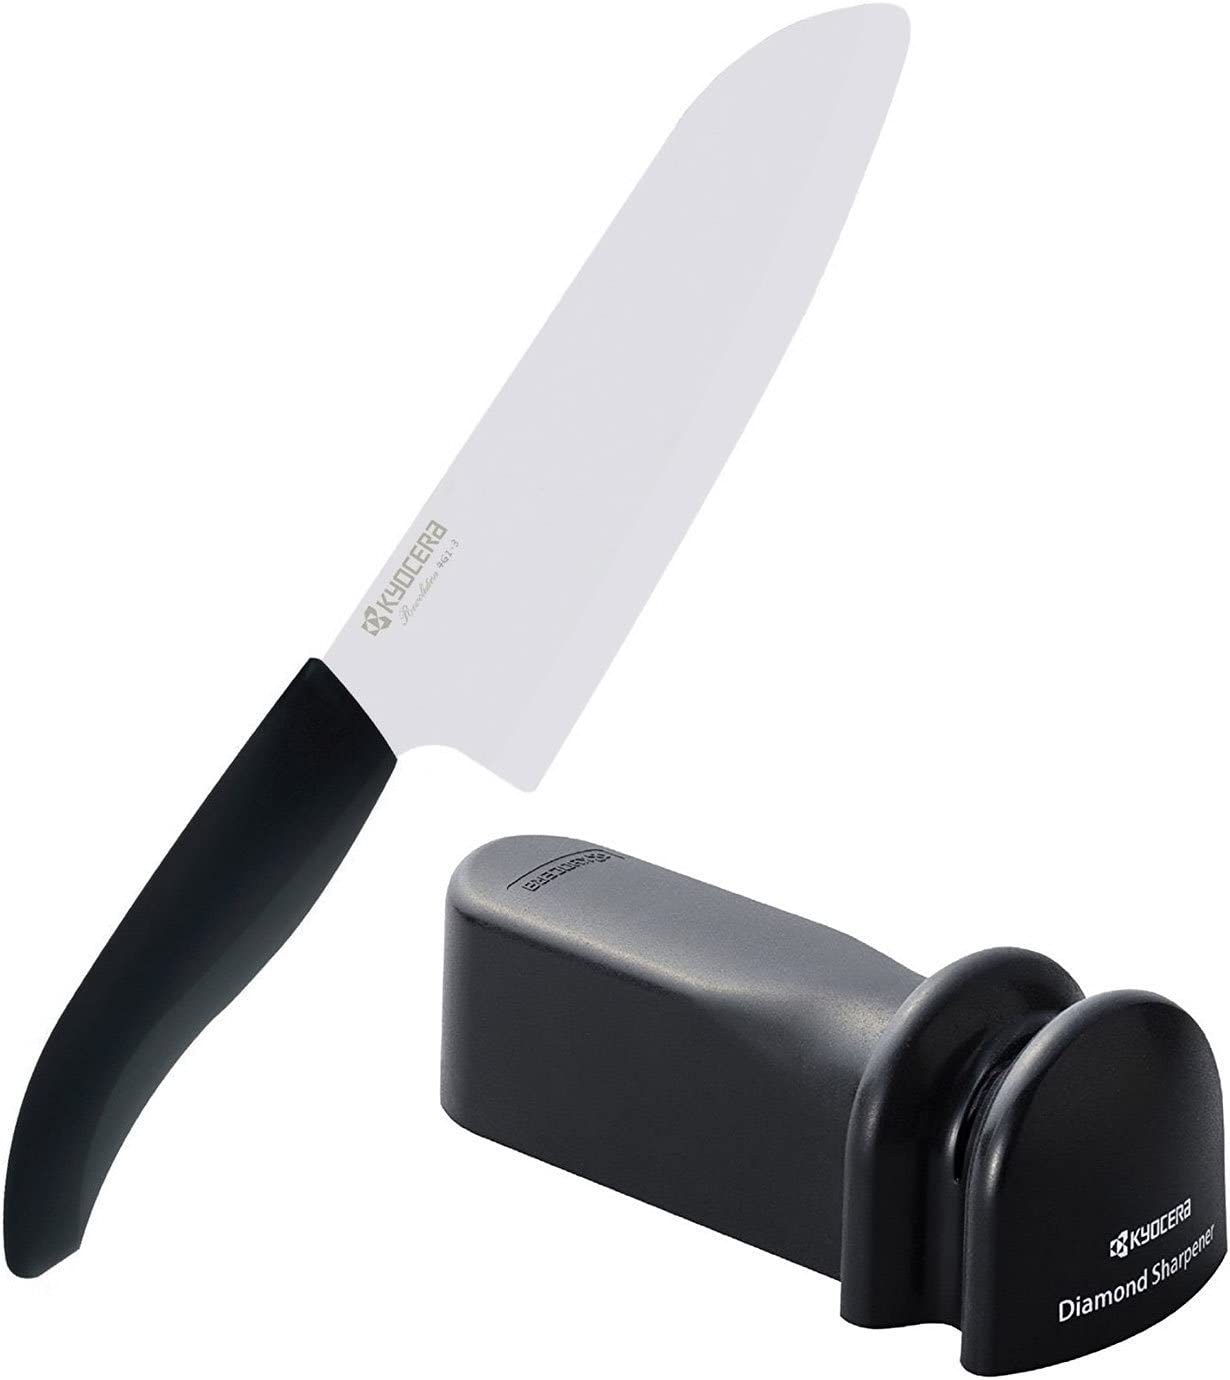 KYOCERA > Diamond Wheel Knife Sharpener for Ceramic and Steel Knives